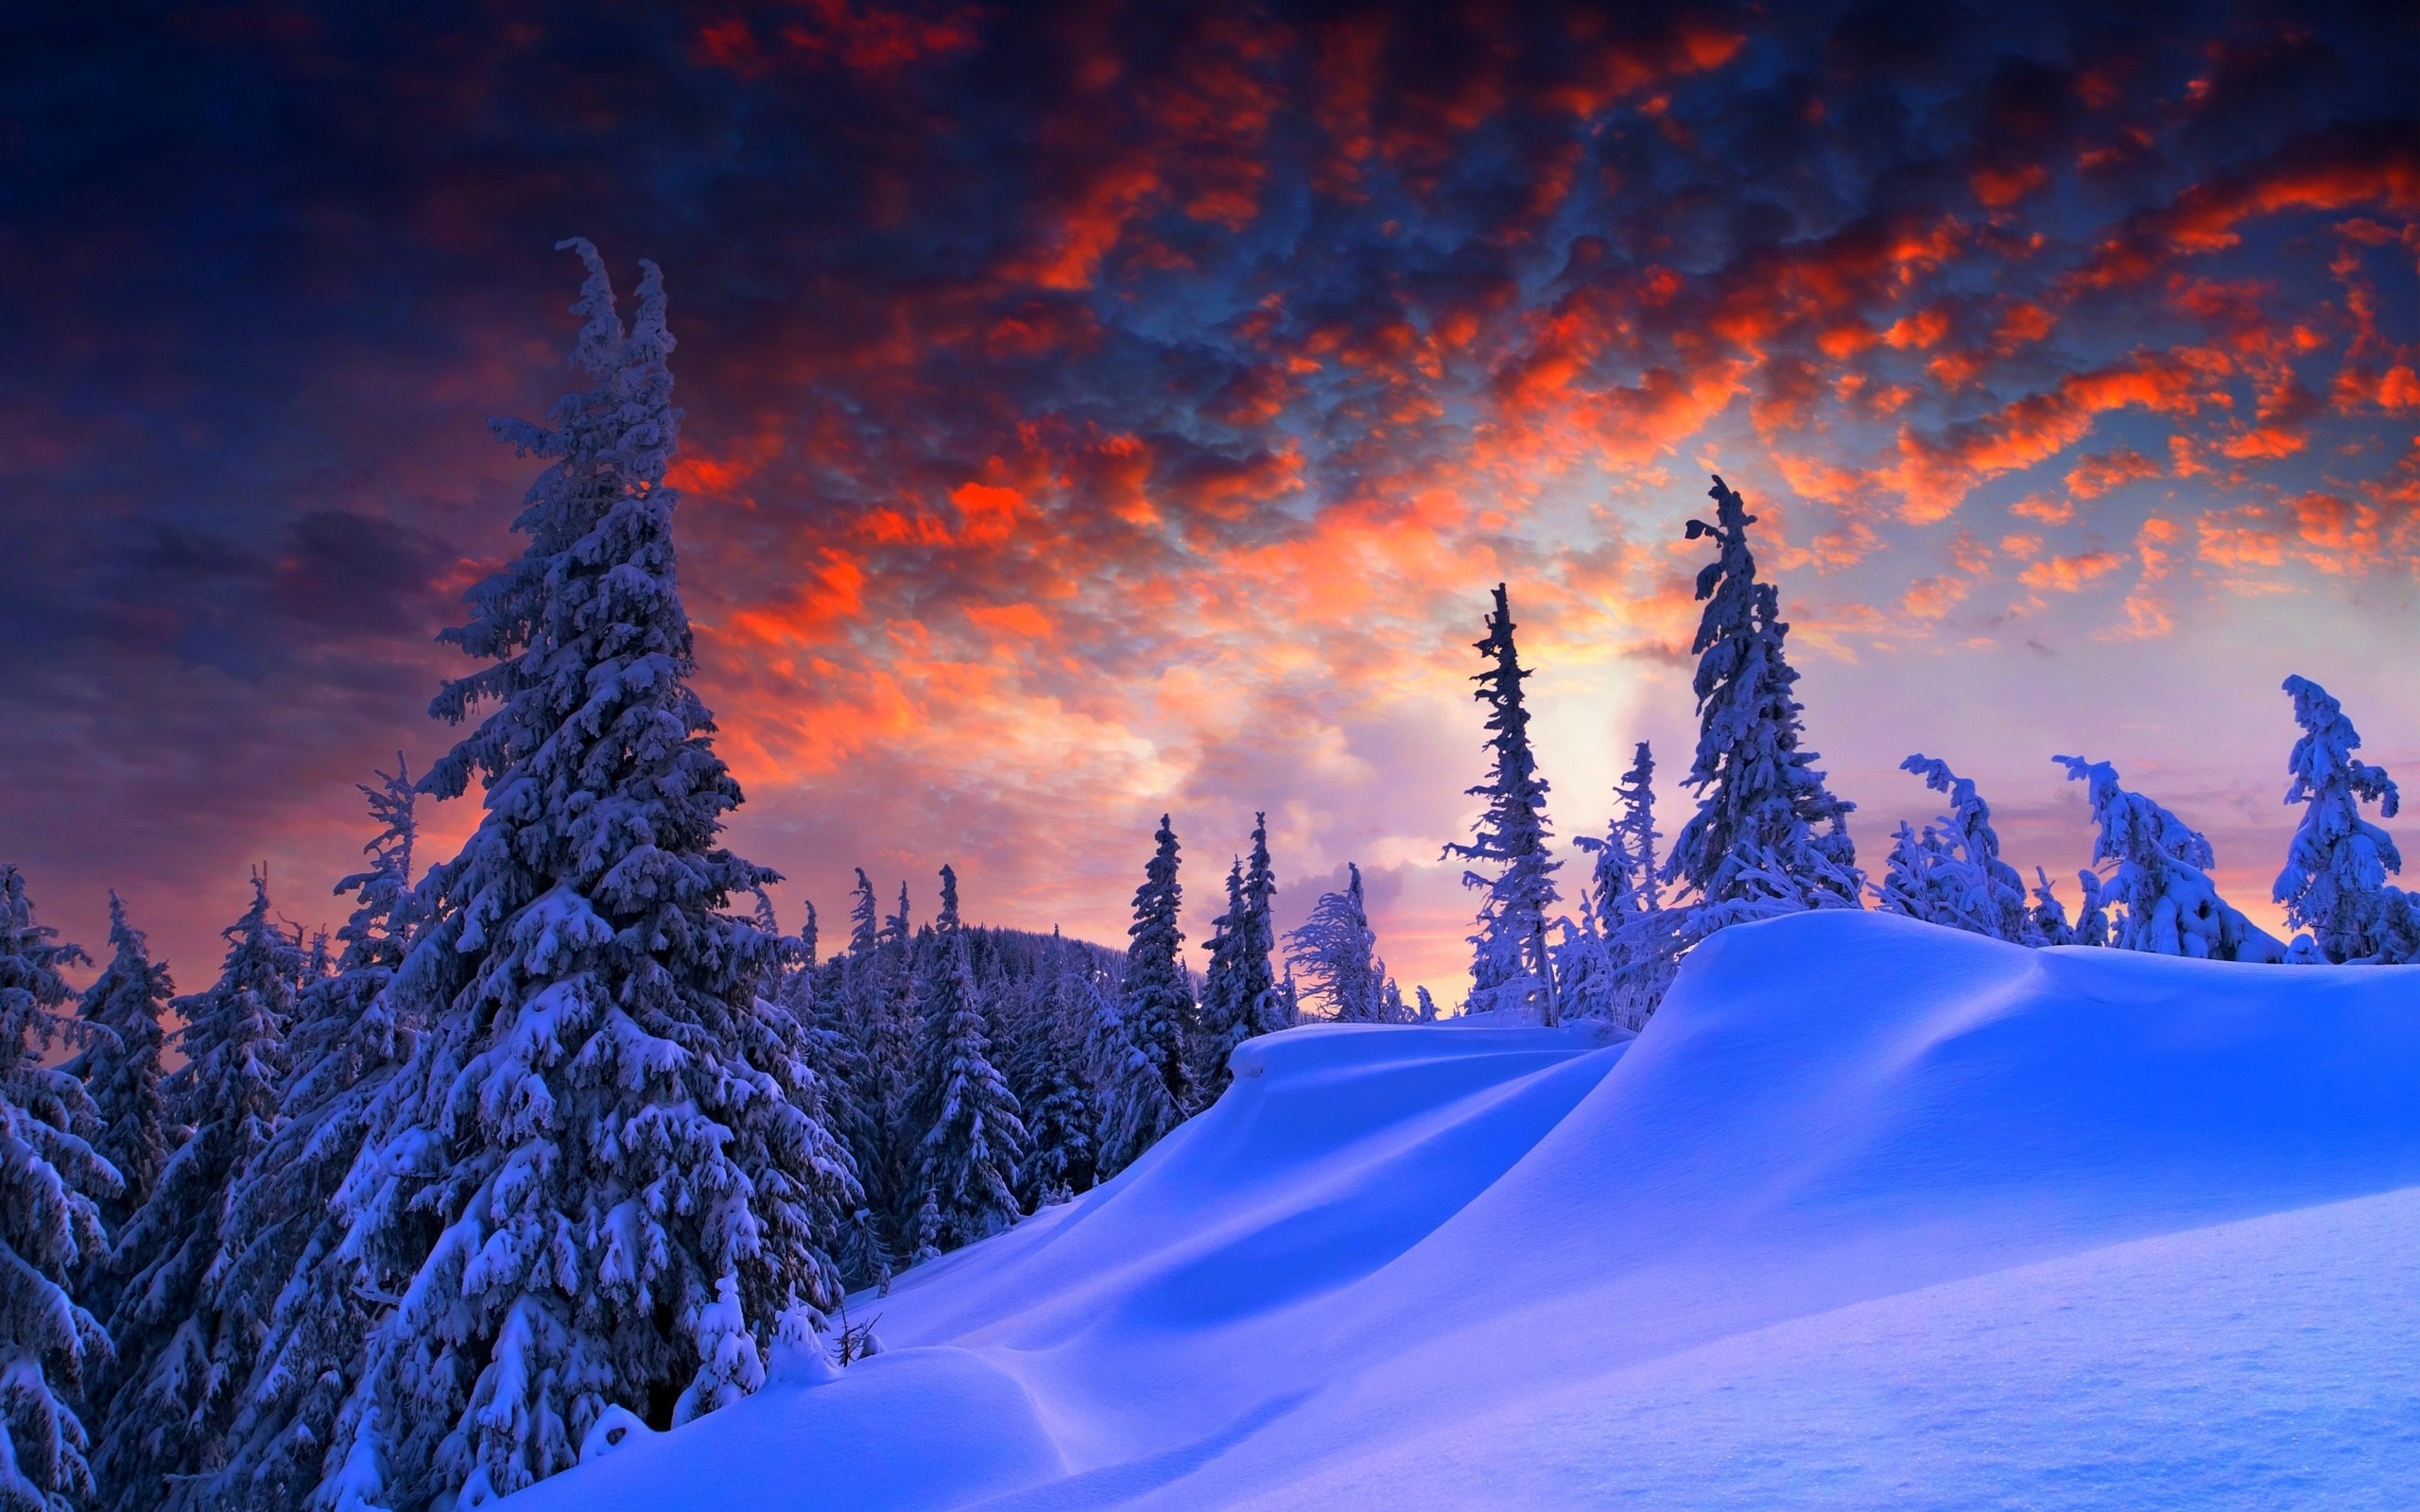 雪の風景の壁紙,空,自然,雪,冬,木